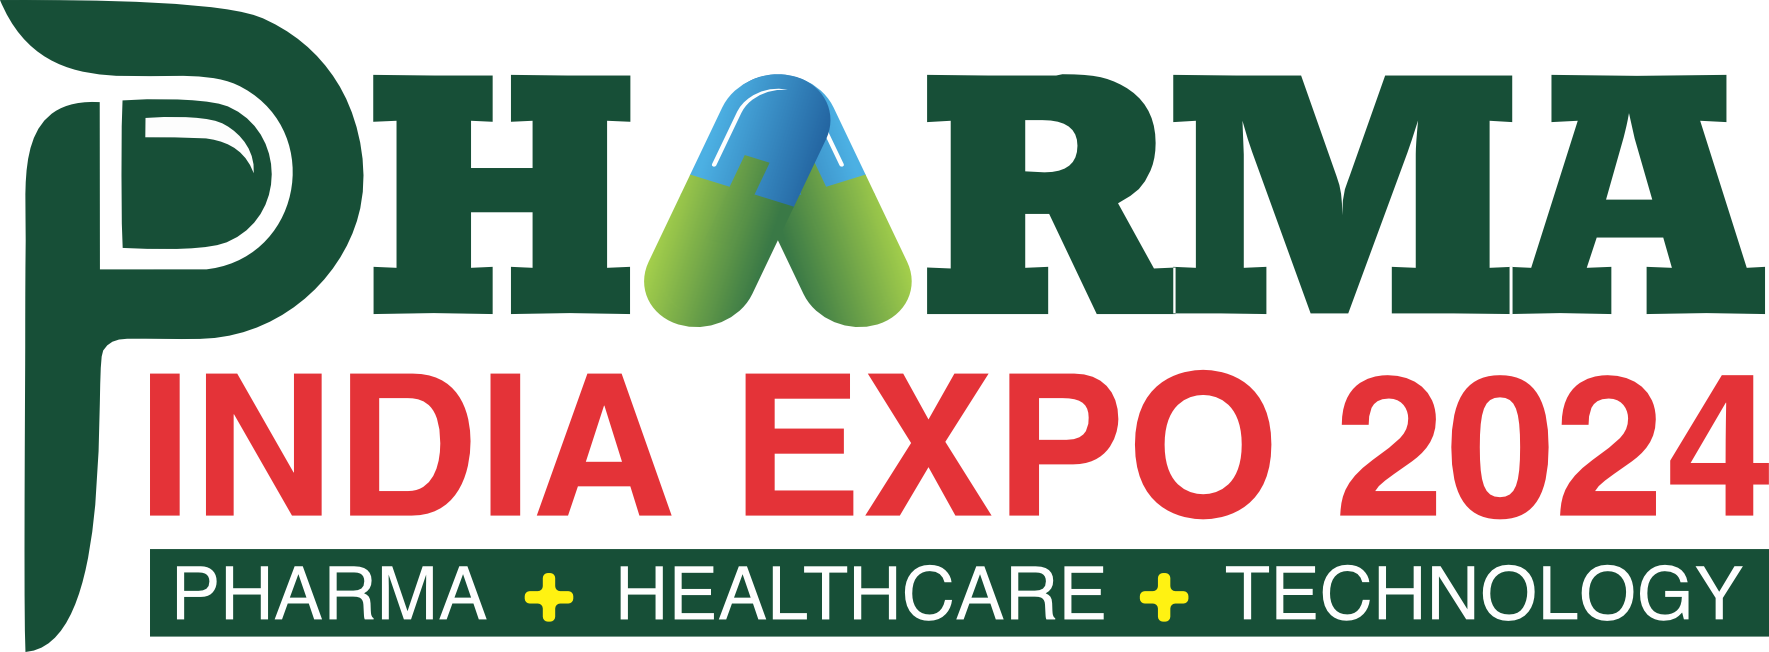 Pharma India Expo 2024 logo